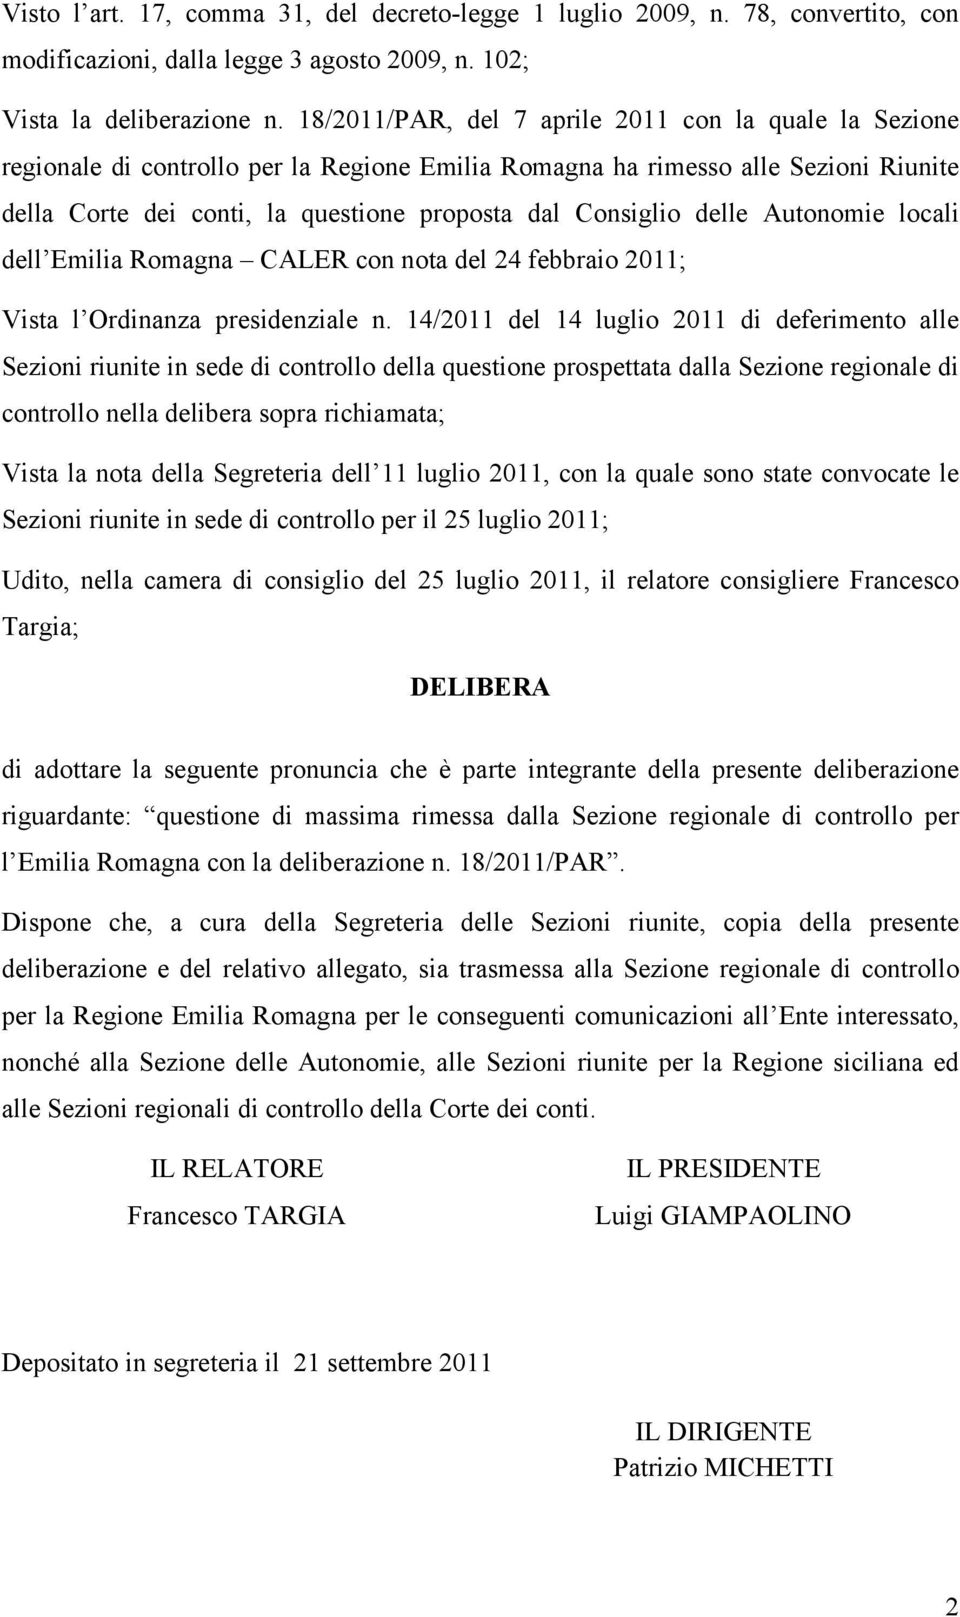 delle Autonomie locali dell Emilia Romagna CALER con nota del 24 febbraio 2011; Vista l Ordinanza presidenziale n.